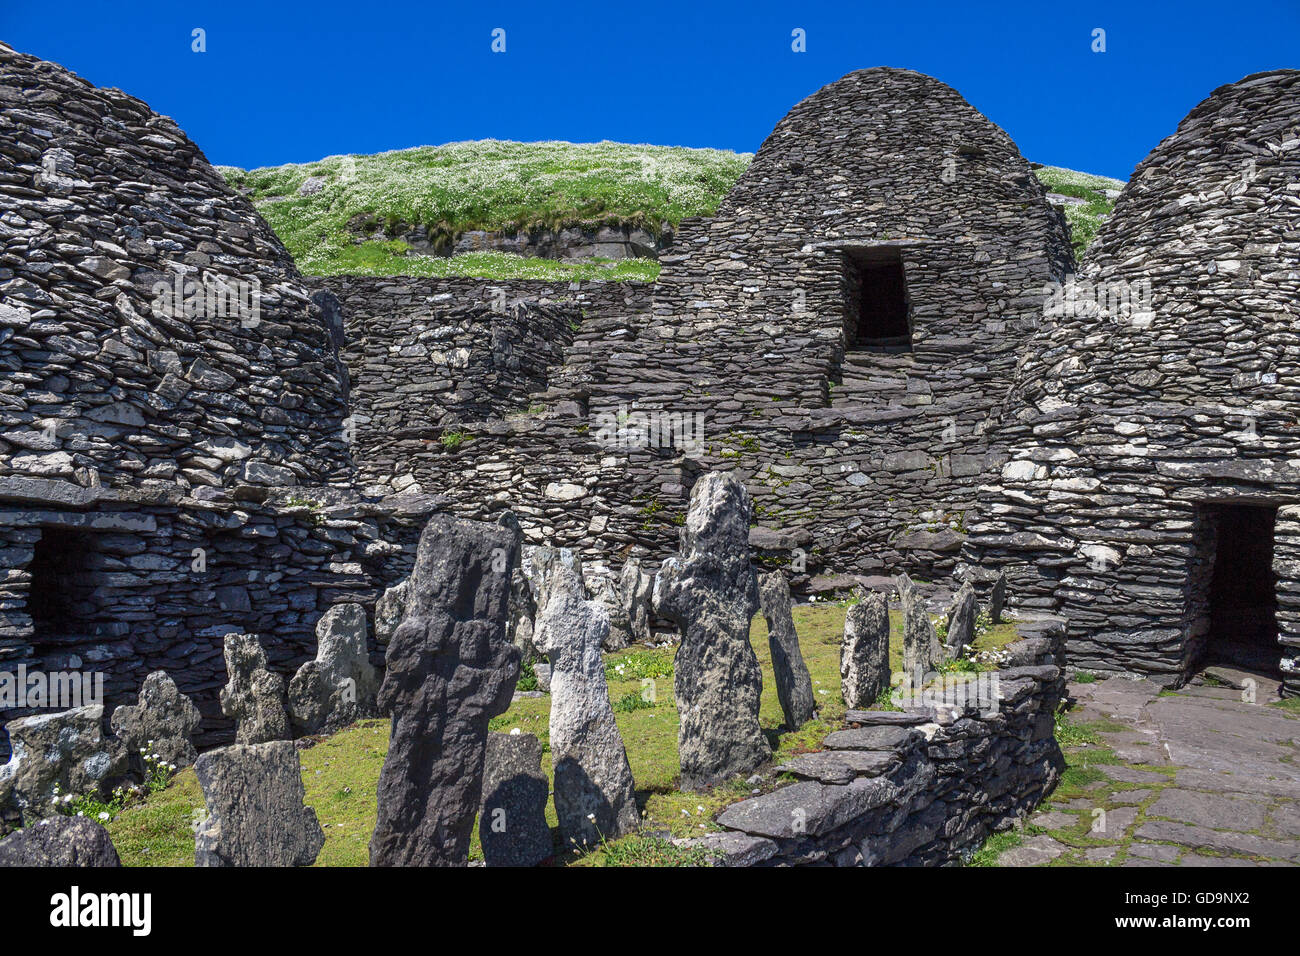 Alte keltische Bienenstock Hütte auf Skellig Michael, County Kerry, Star Wars Filmeinstellung und UNESCO-Weltkulturerbe Kloster. Stockfoto